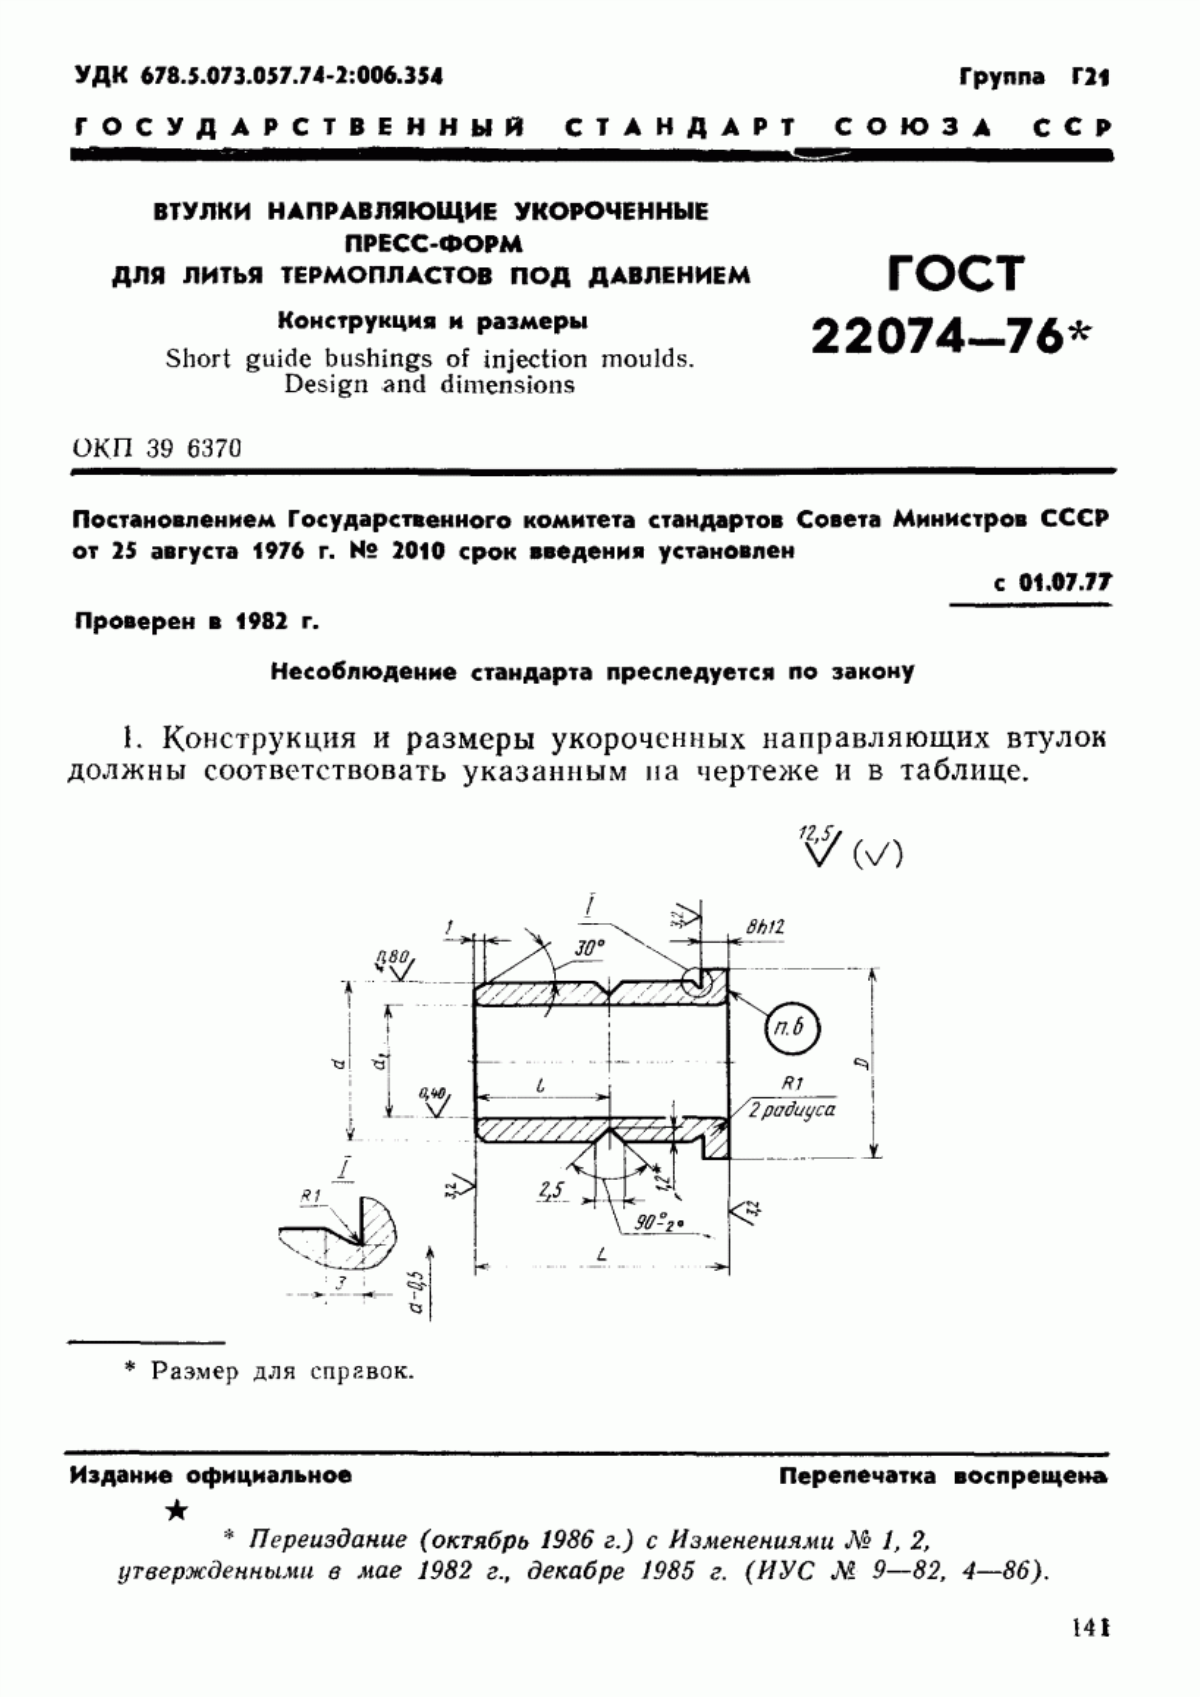 ГОСТ 22074-76 Втулки направляющие укороченные пресс-форм для литья термопластов под давлением. Конструкция и размеры